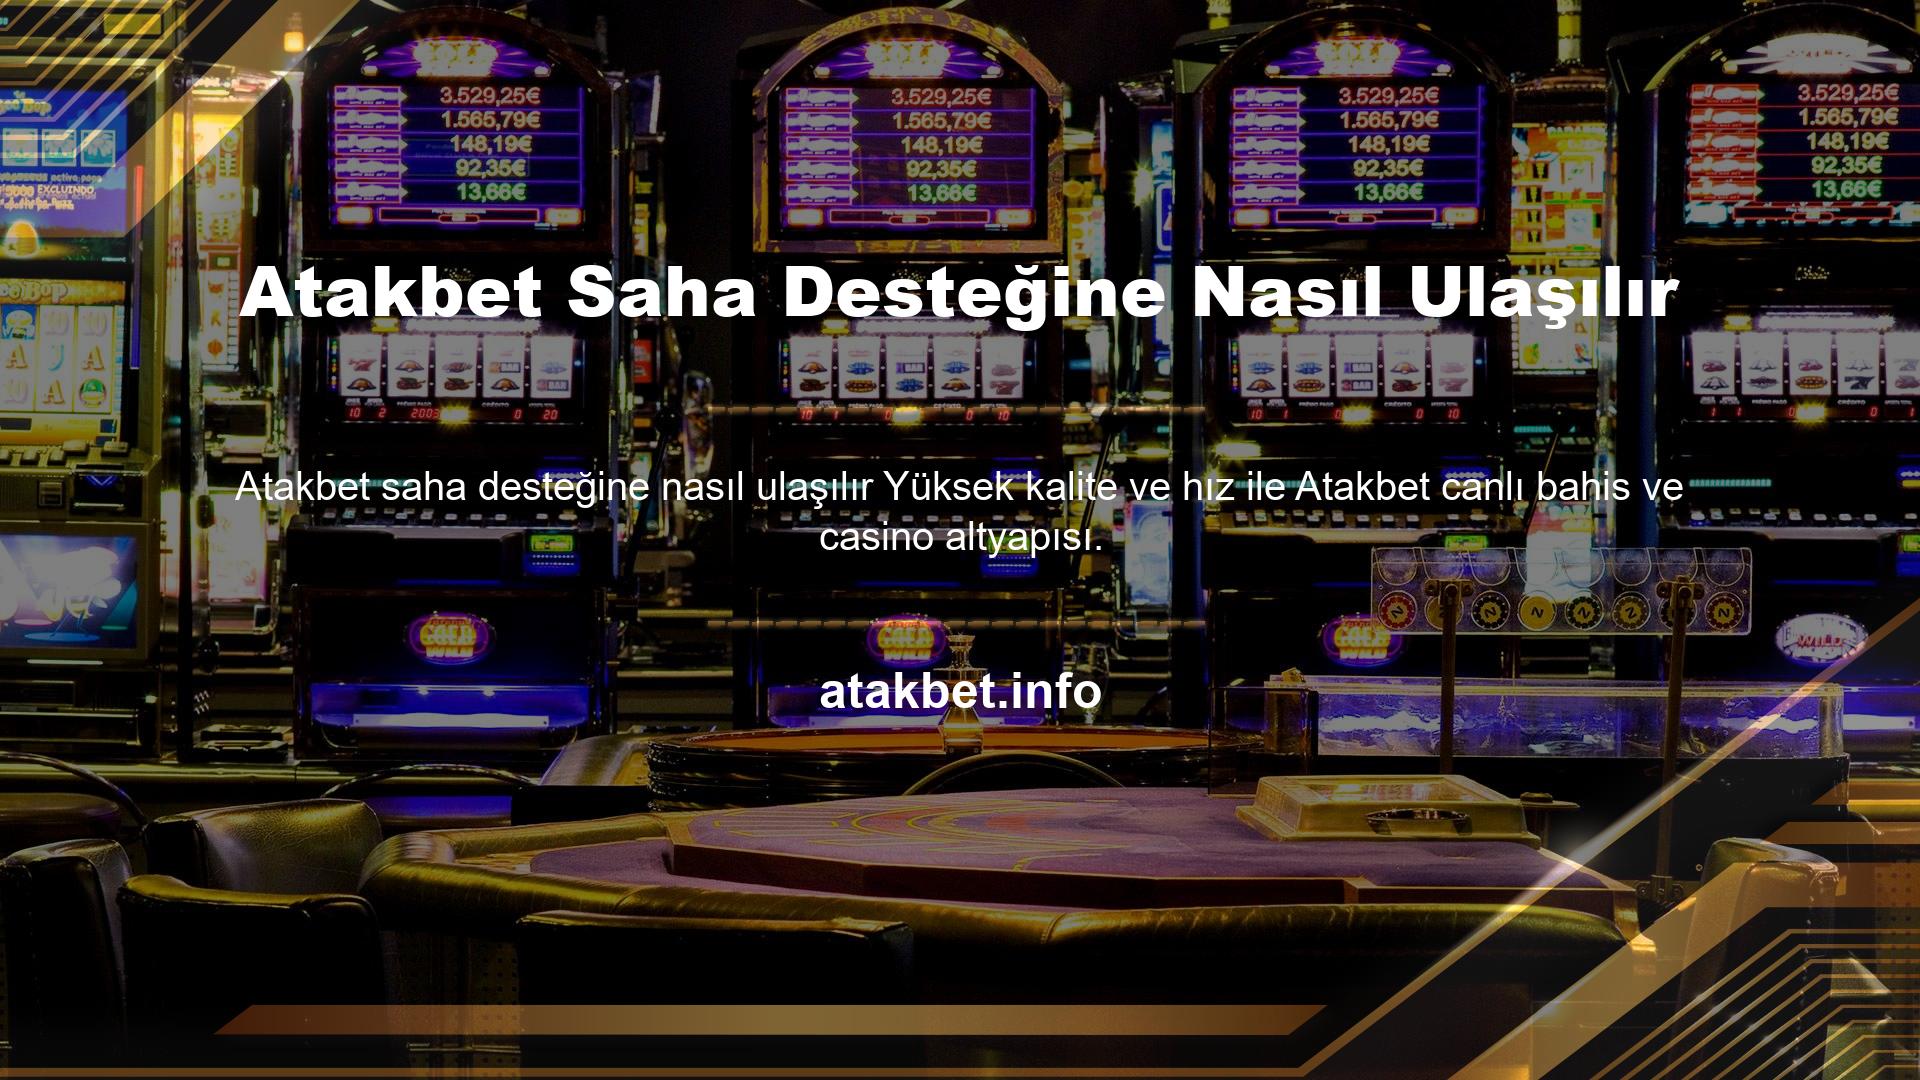 Kumar lisansı siteyi güvenilir kılarken, dünyaca ünlü programlama markası oynaması kolay casino oyunlarını düzenlemektedir